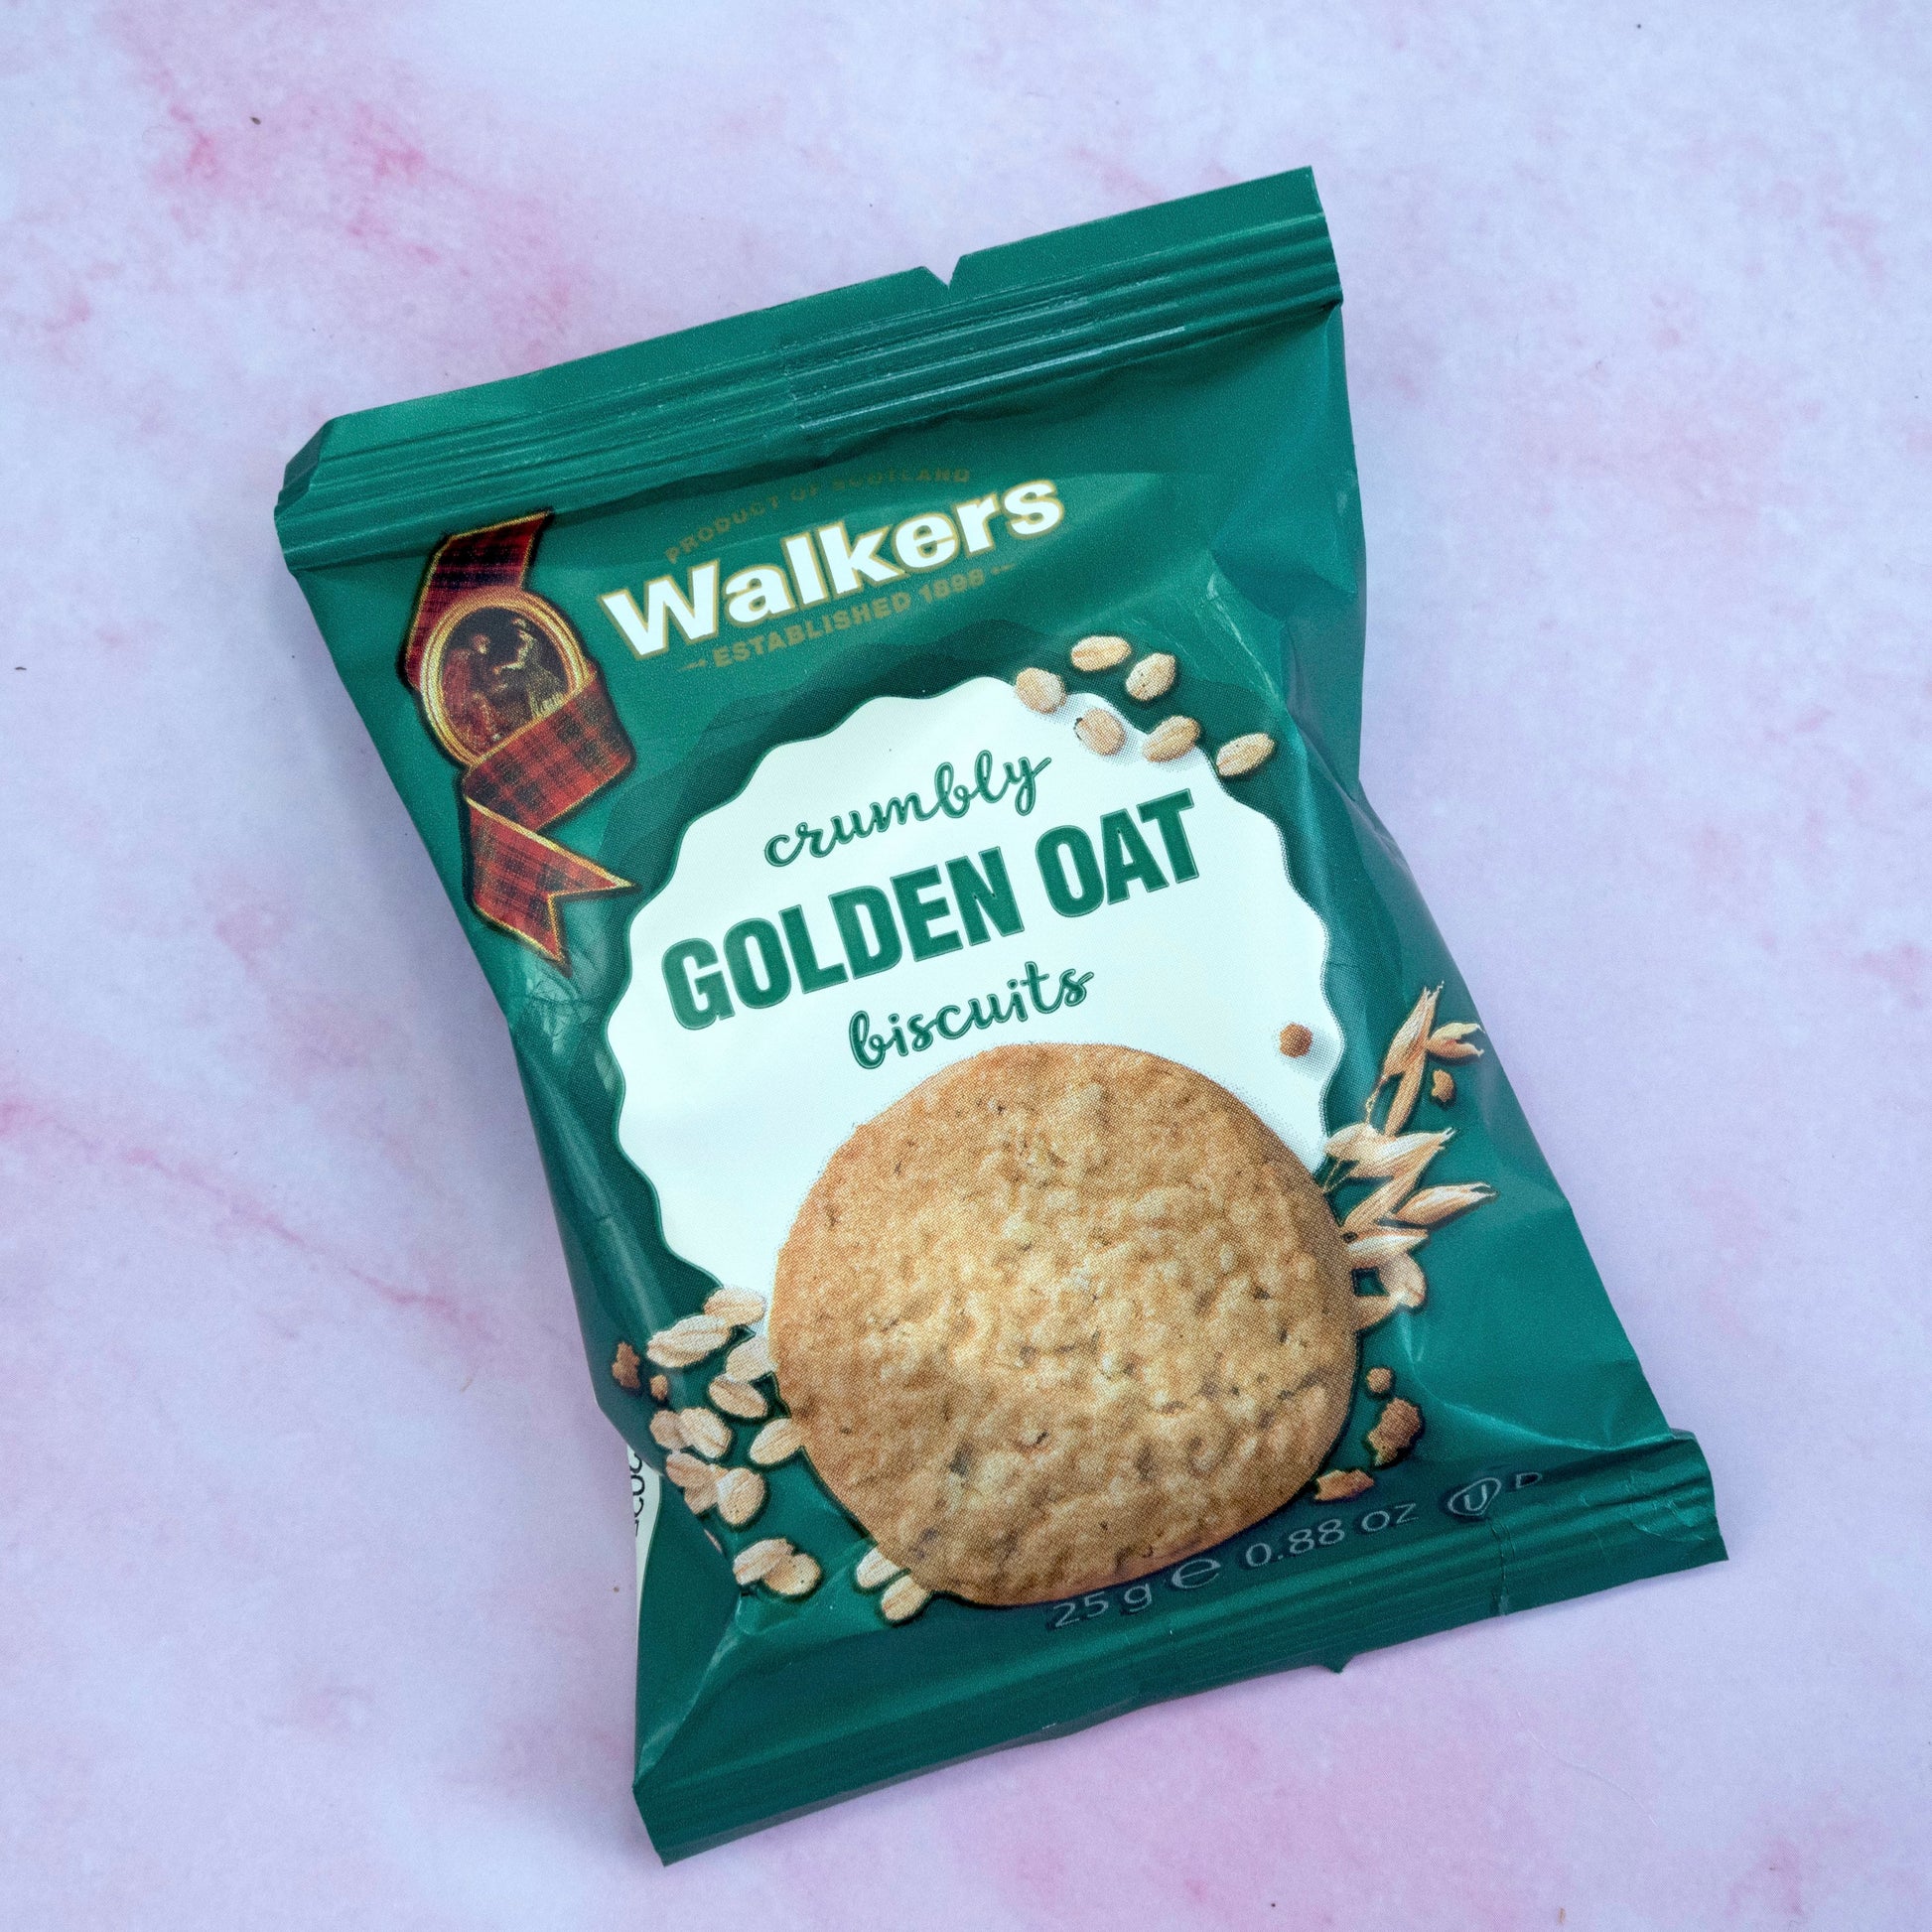 Golden Oat Walkers Biscuits Packet of 2